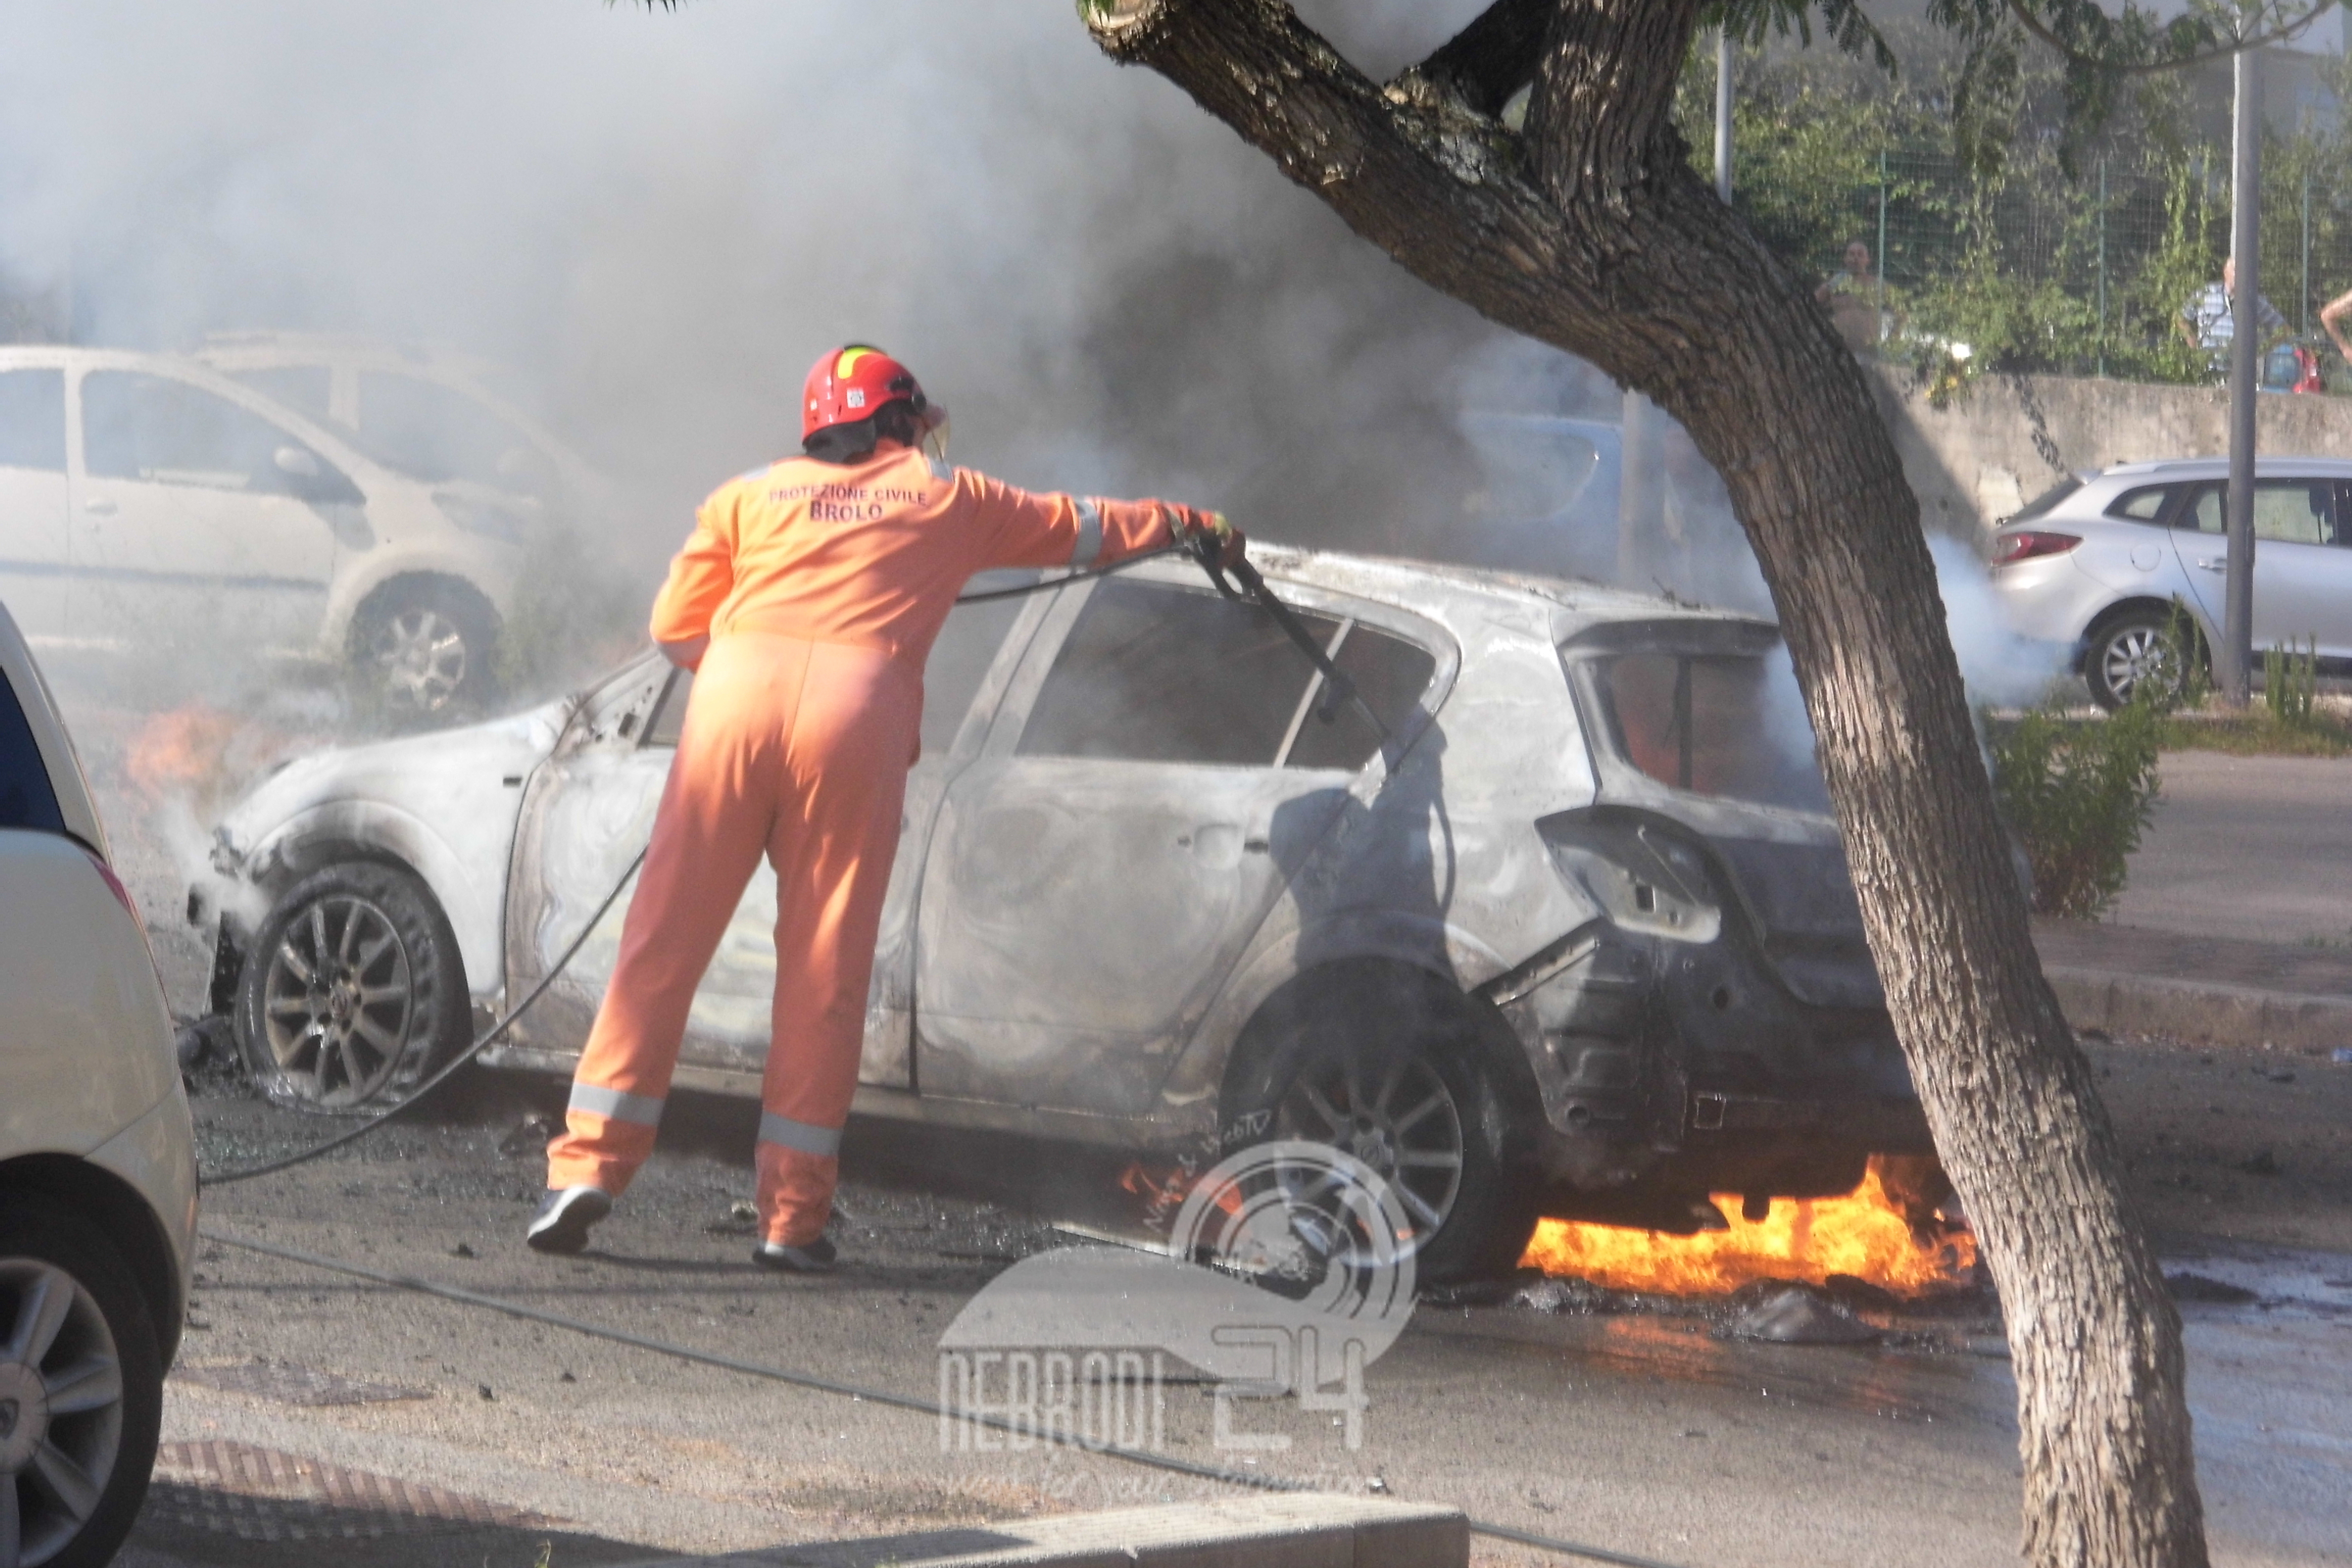 Brolo – Prende fuoco una macchina, la protezione civile evita il peggio.